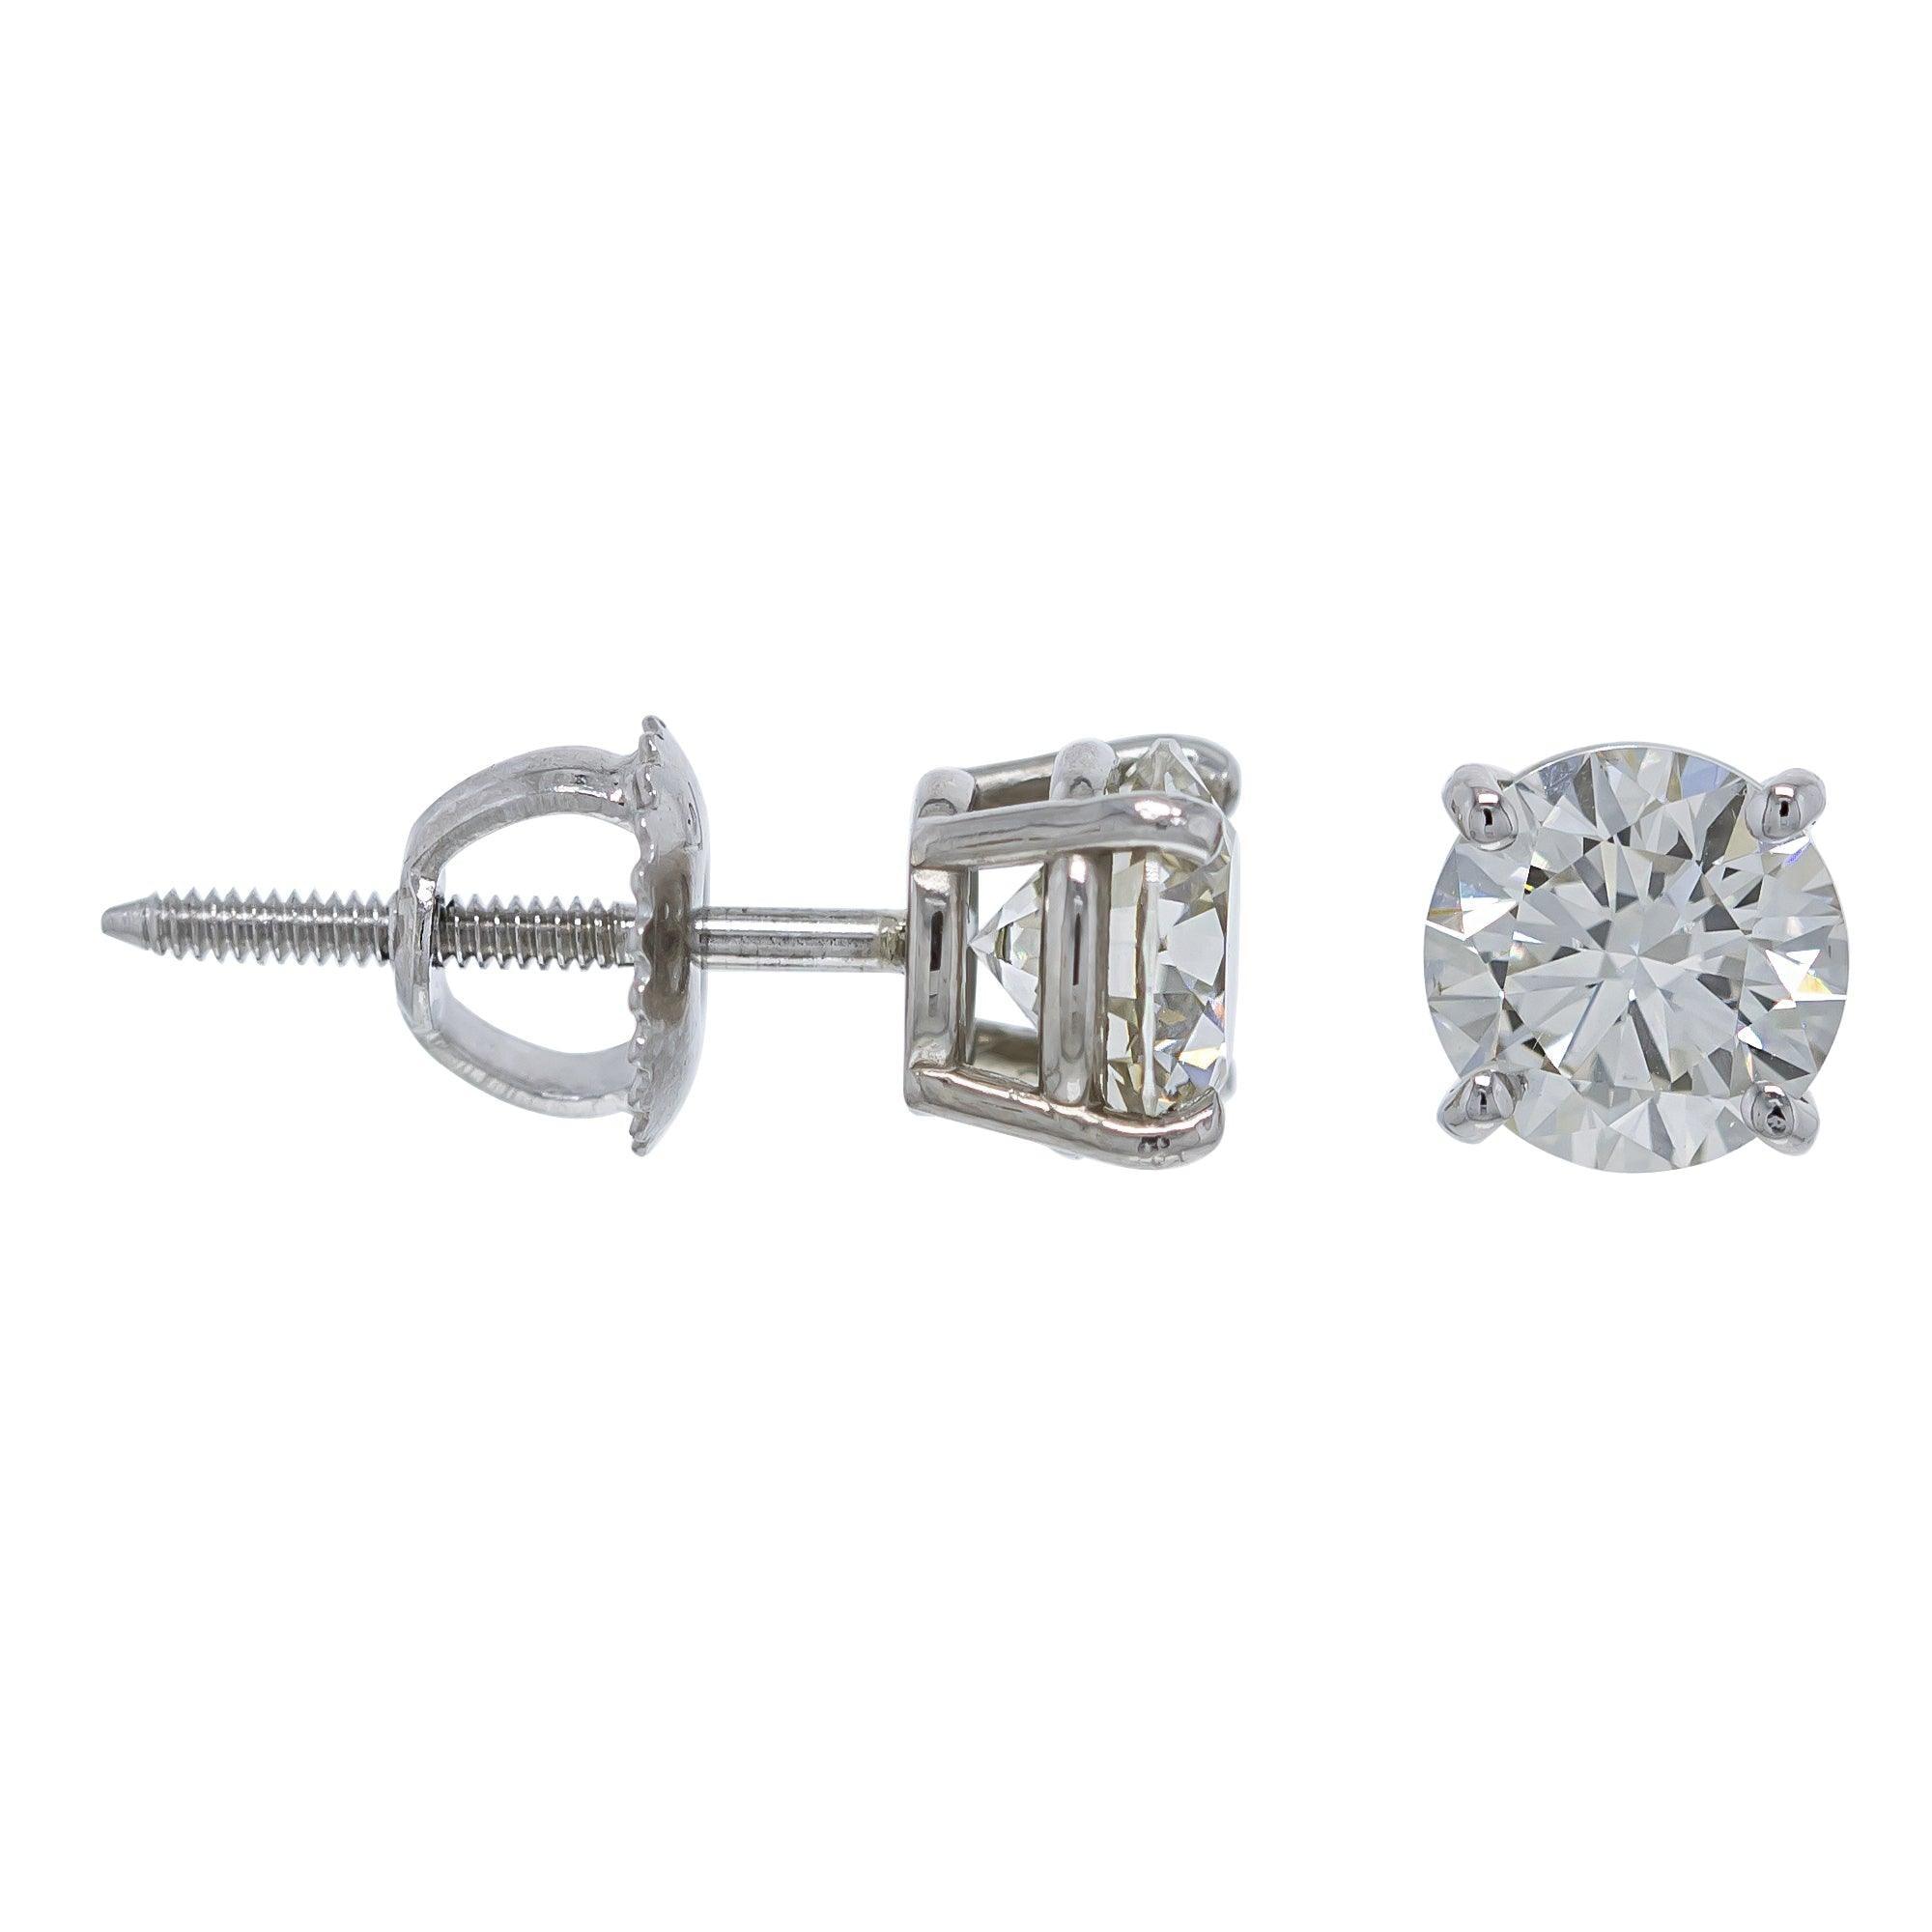 Marilyn Earrings 1/2 Ct. T.W. IGI Certified - New World Diamonds - Earrings